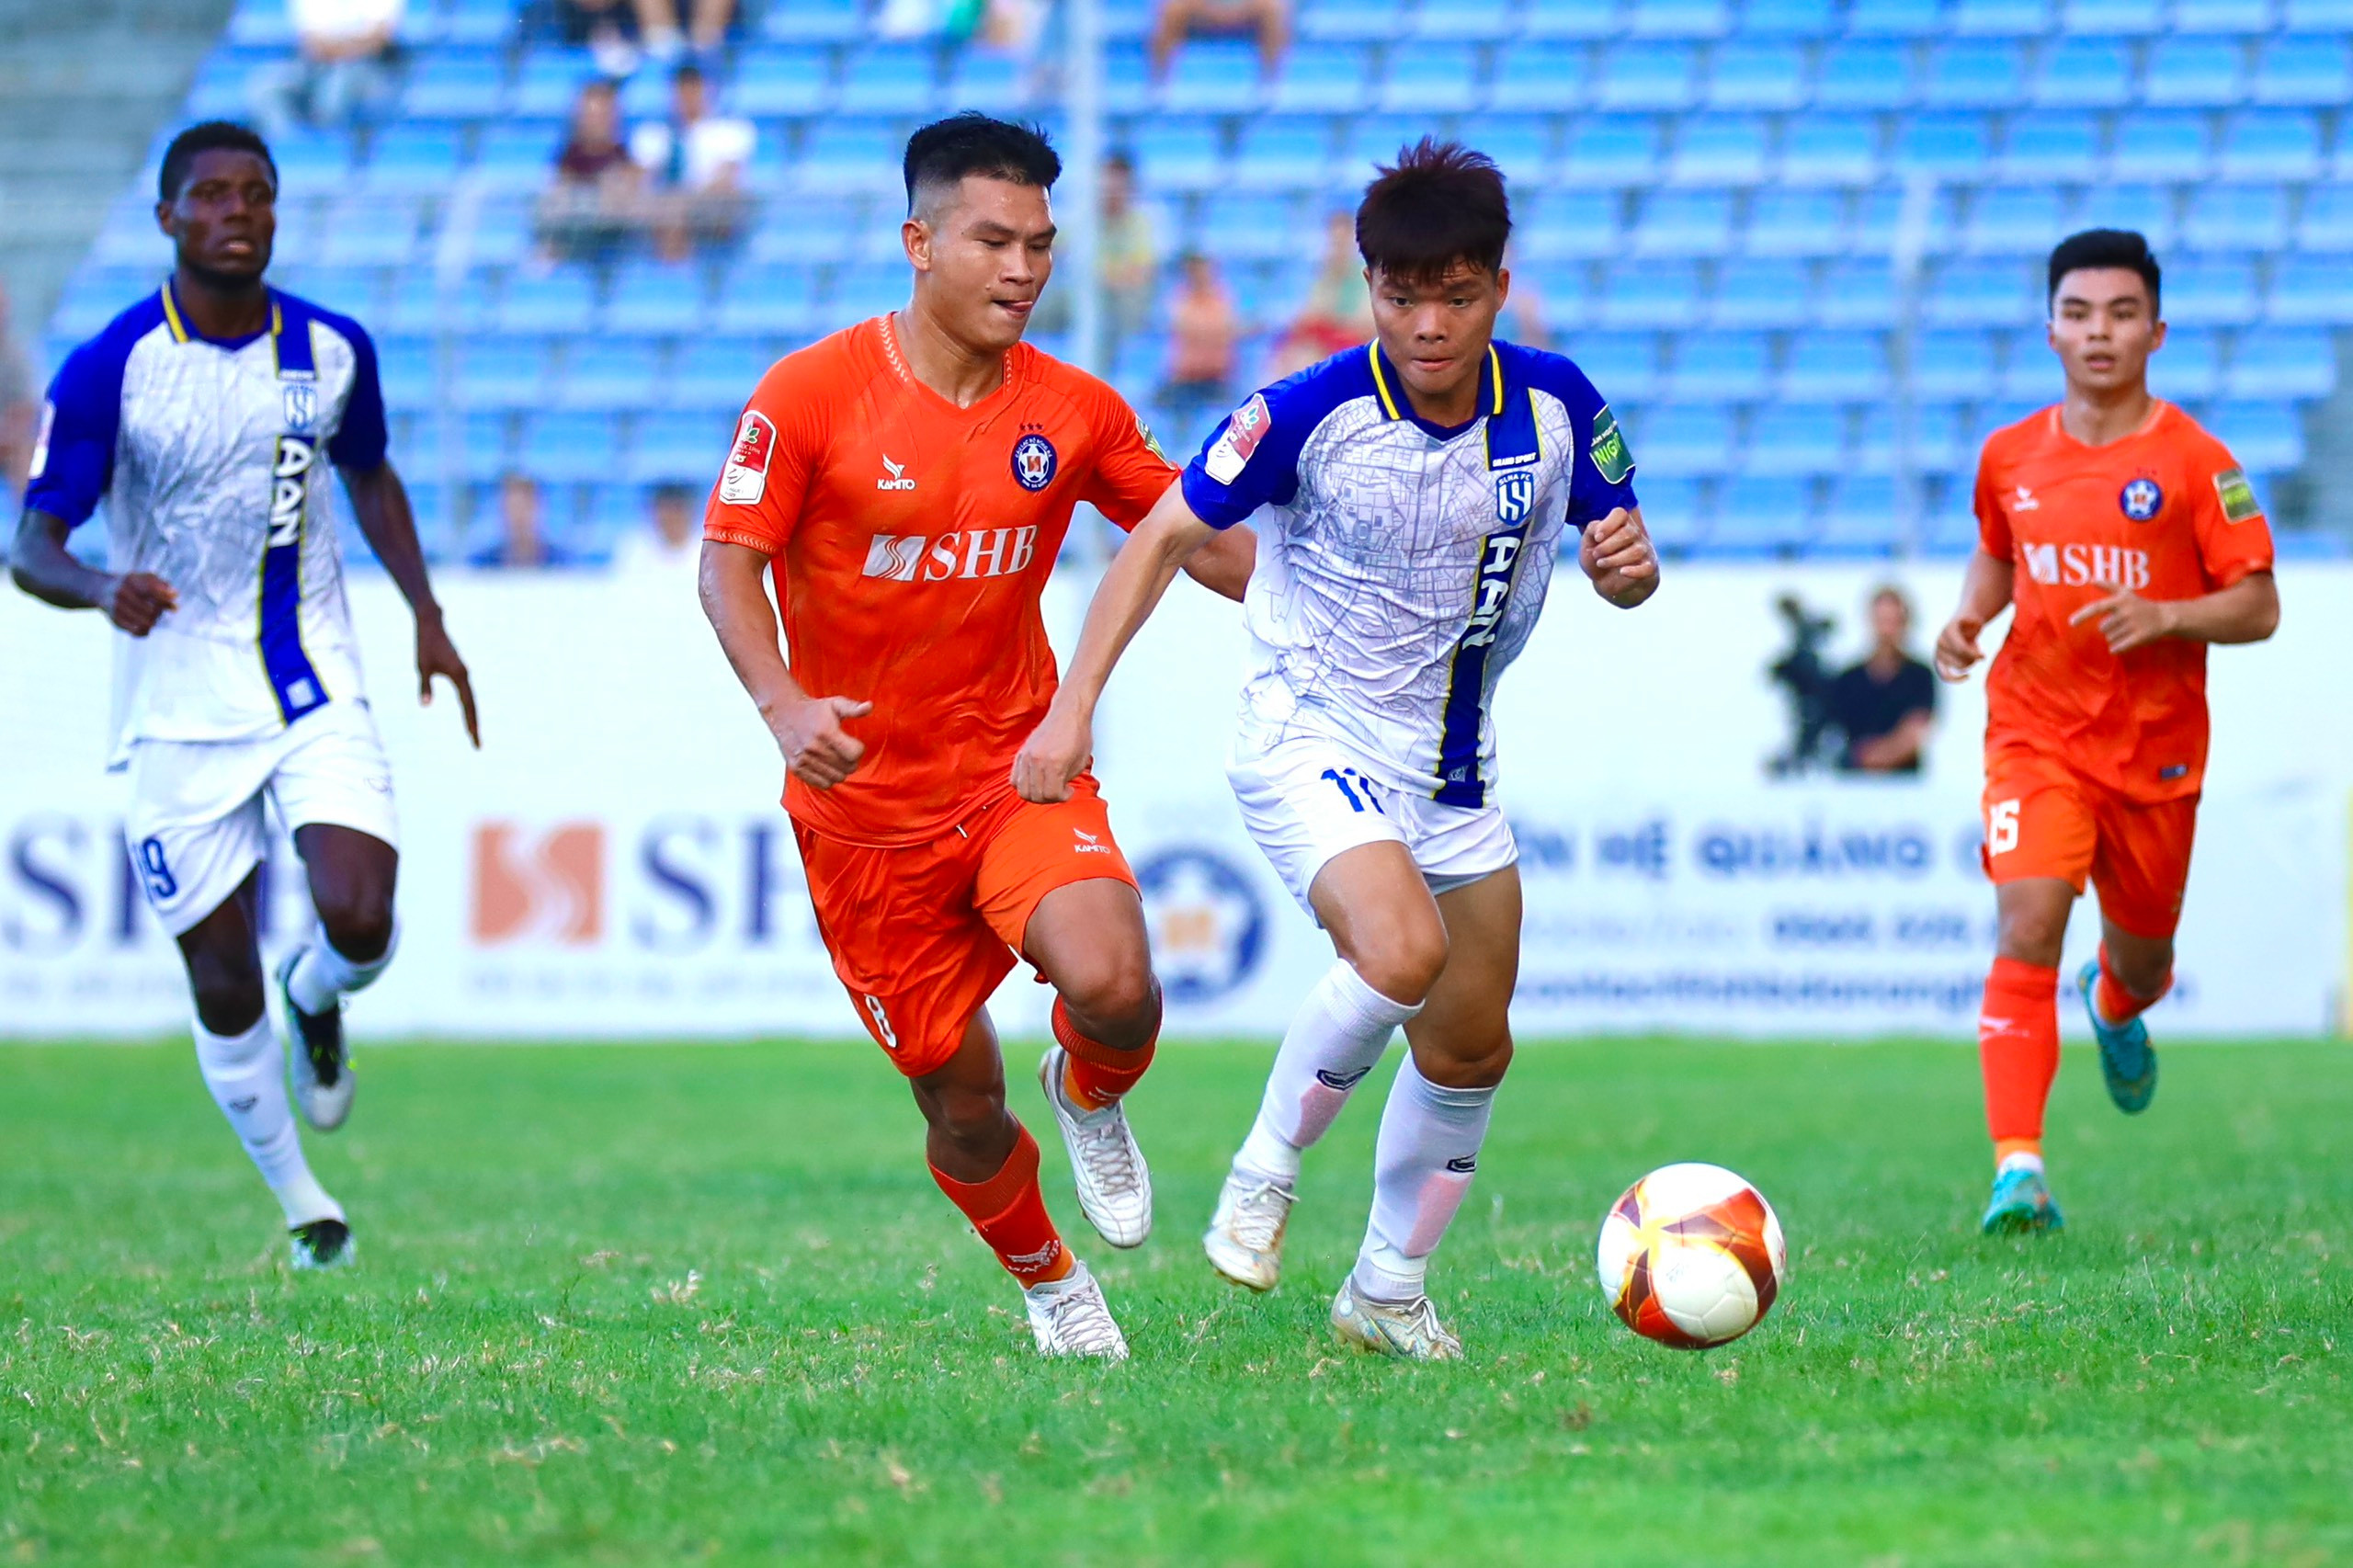 bna_Ở trận đấu này, các cầu thủ trẻ Sông Lam Nghệ An thi đấu rất chắc chắn, với quyết tâm cao giành chiến thắng (2).jpg